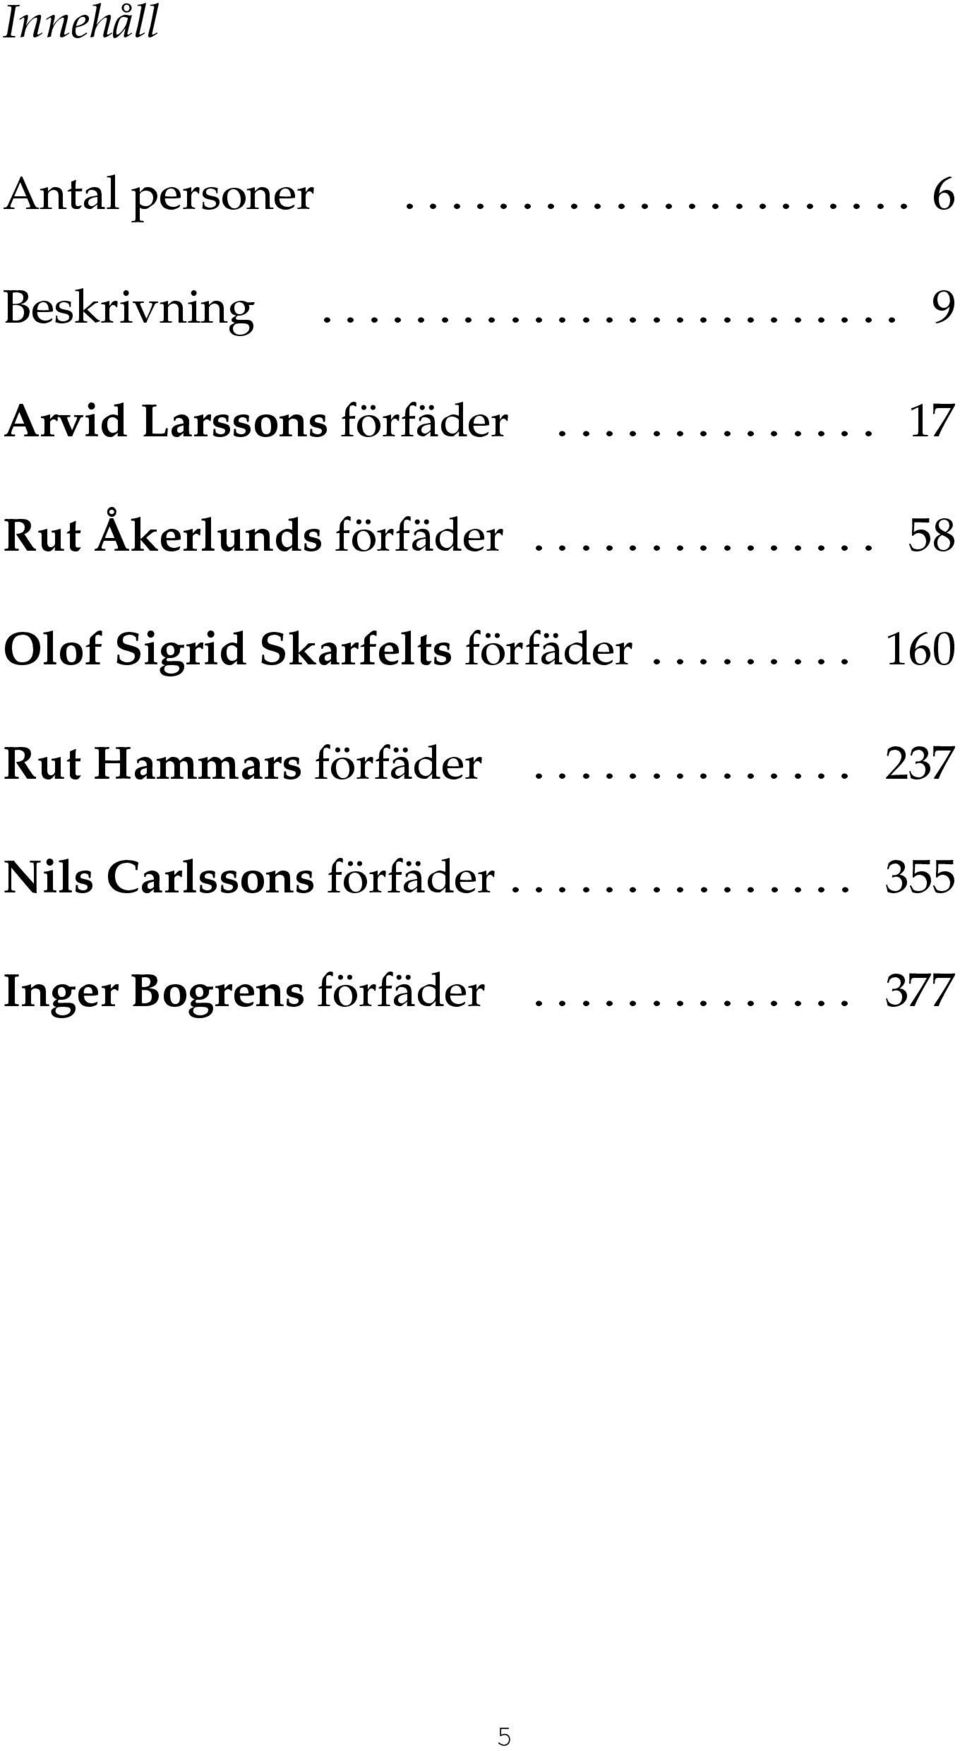 .............. 58 Olof Sigrid Skarfelts förfäder......... 160 Rut Hammars förfäder.